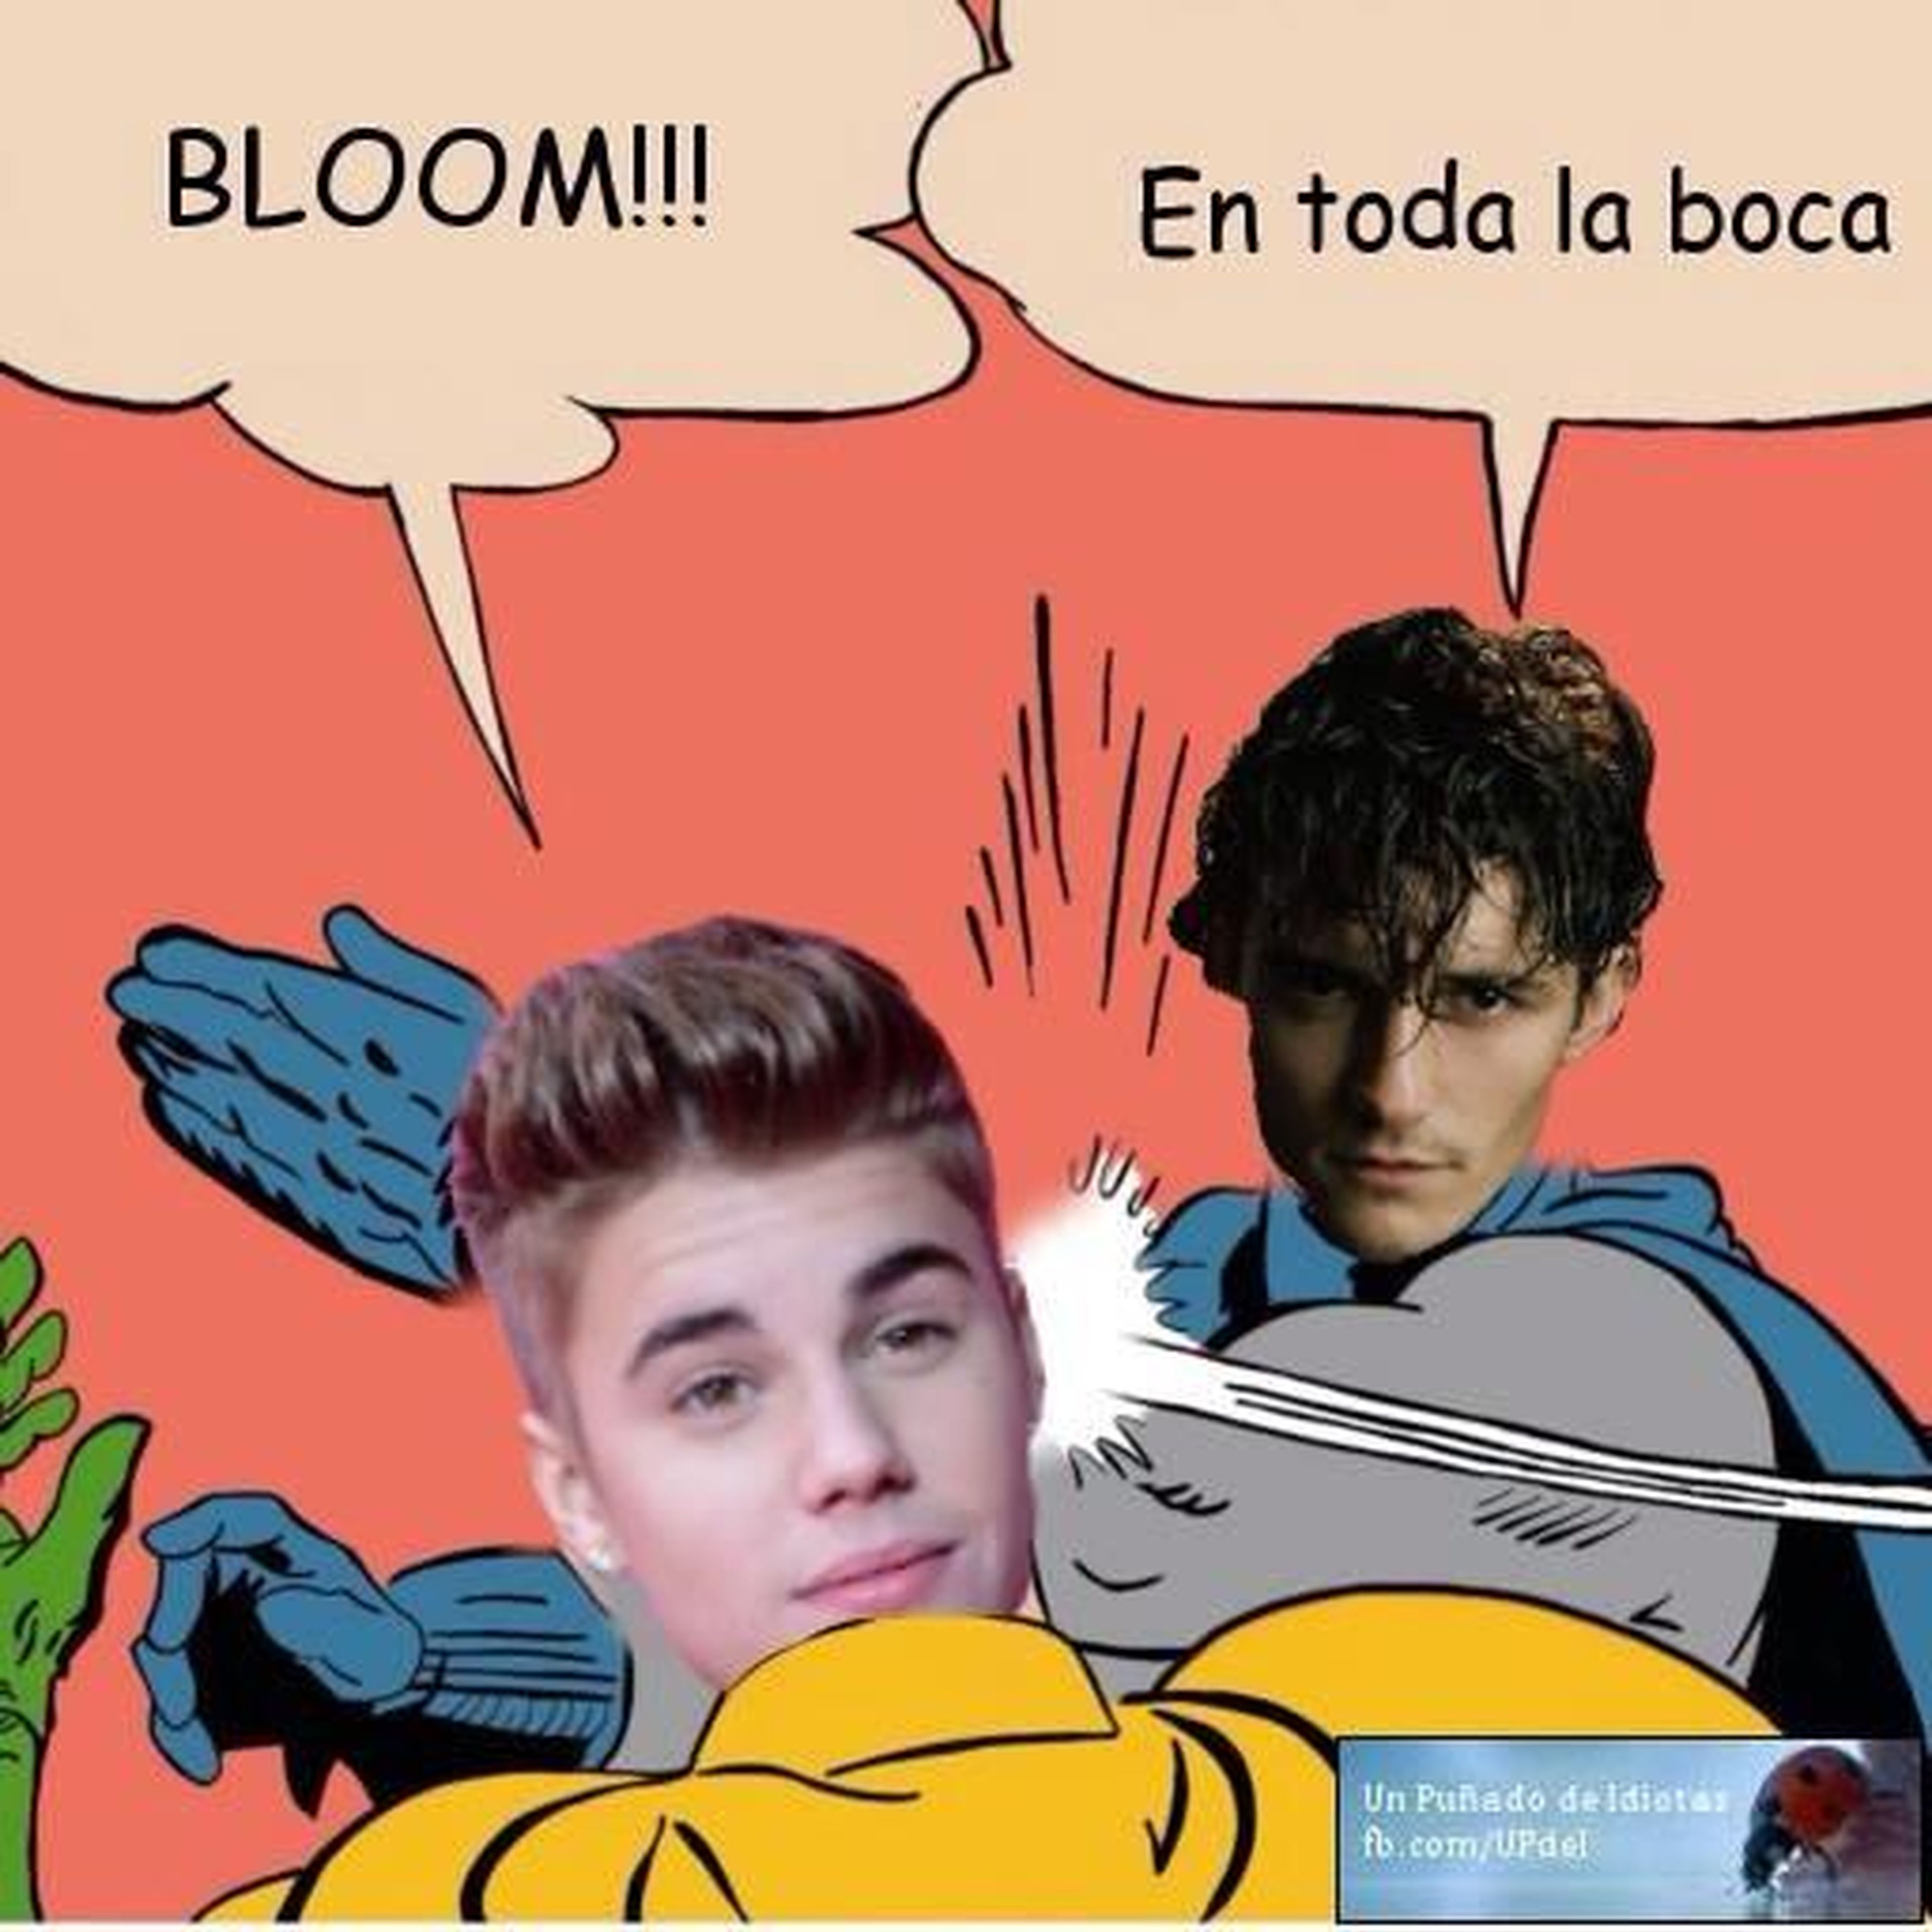 Justin Bieber vs. Orlando Bloom, tráiler de El Hobbit... Las noticias de la semana: 03/08/14